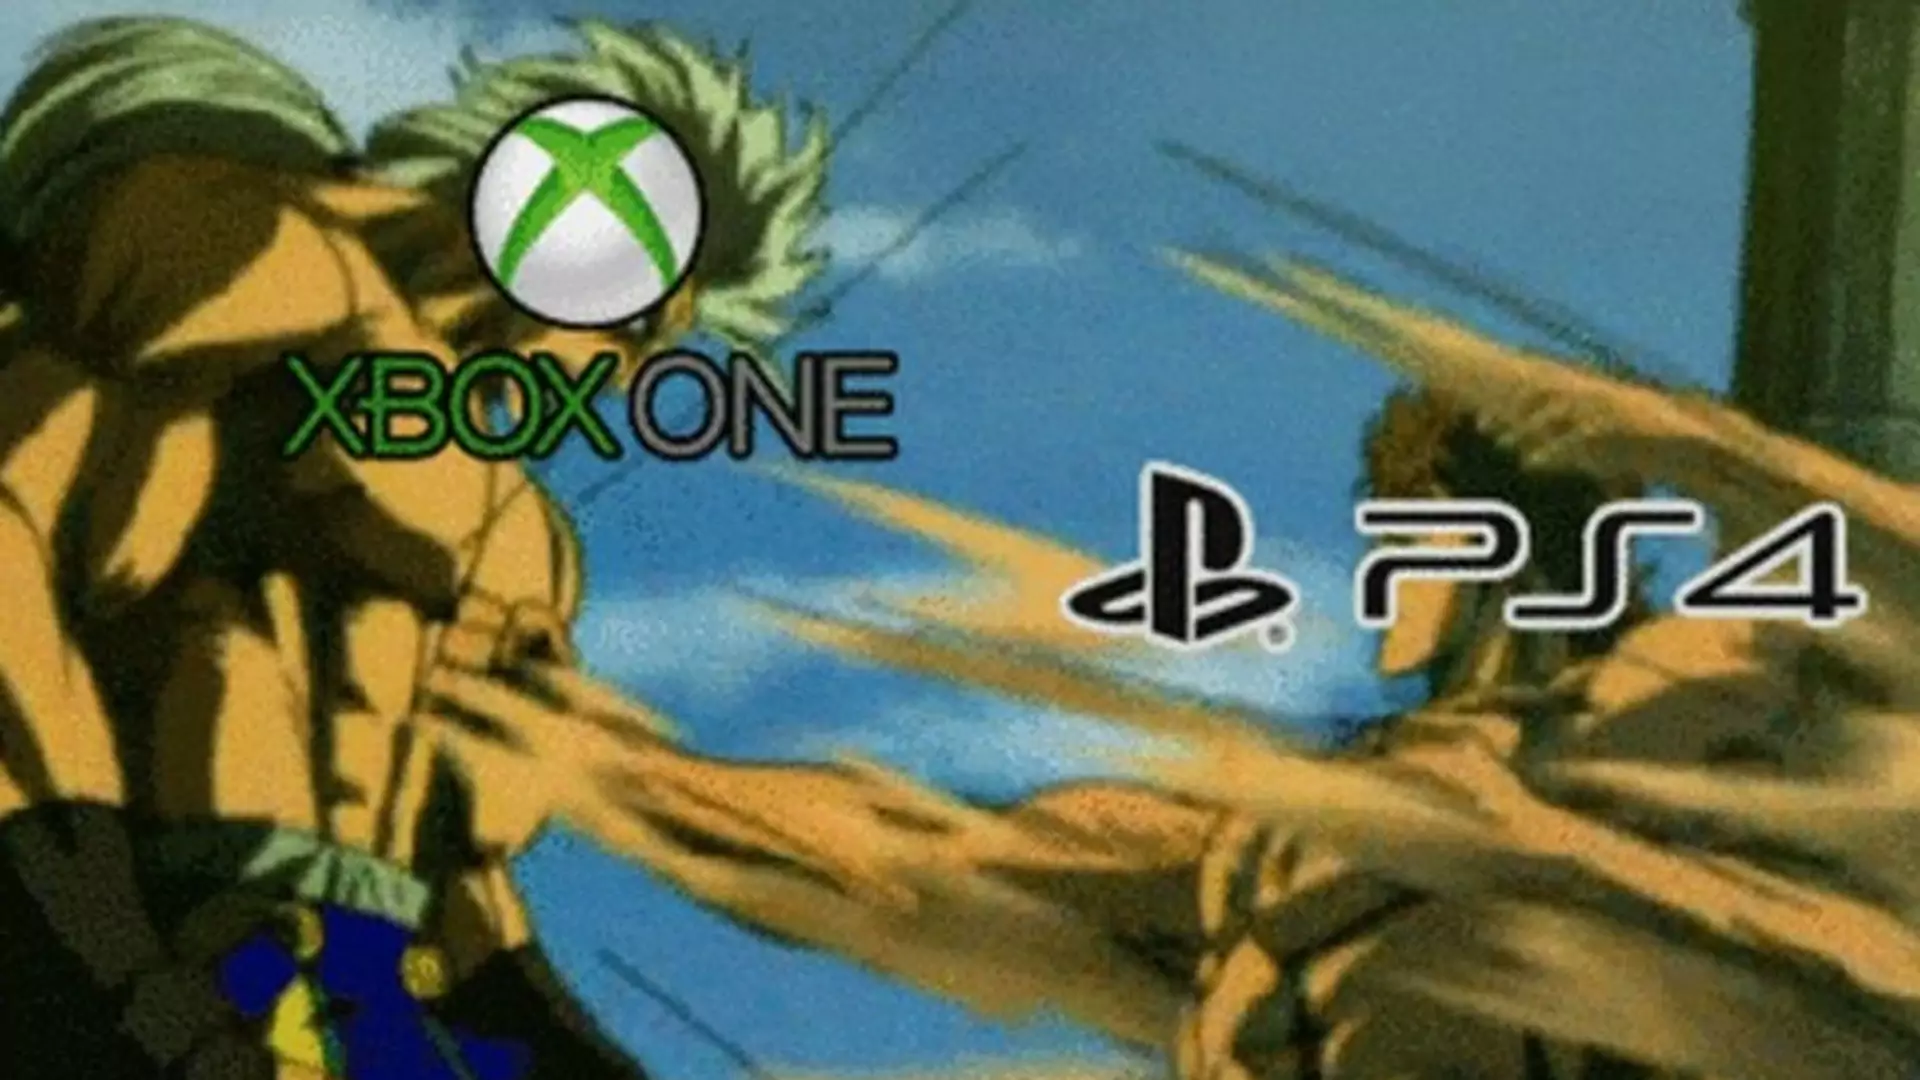 PlayStation 4 vs. Xbox One. Którzy gracze są lepsi? Przeprowadzono test na czas reakcji